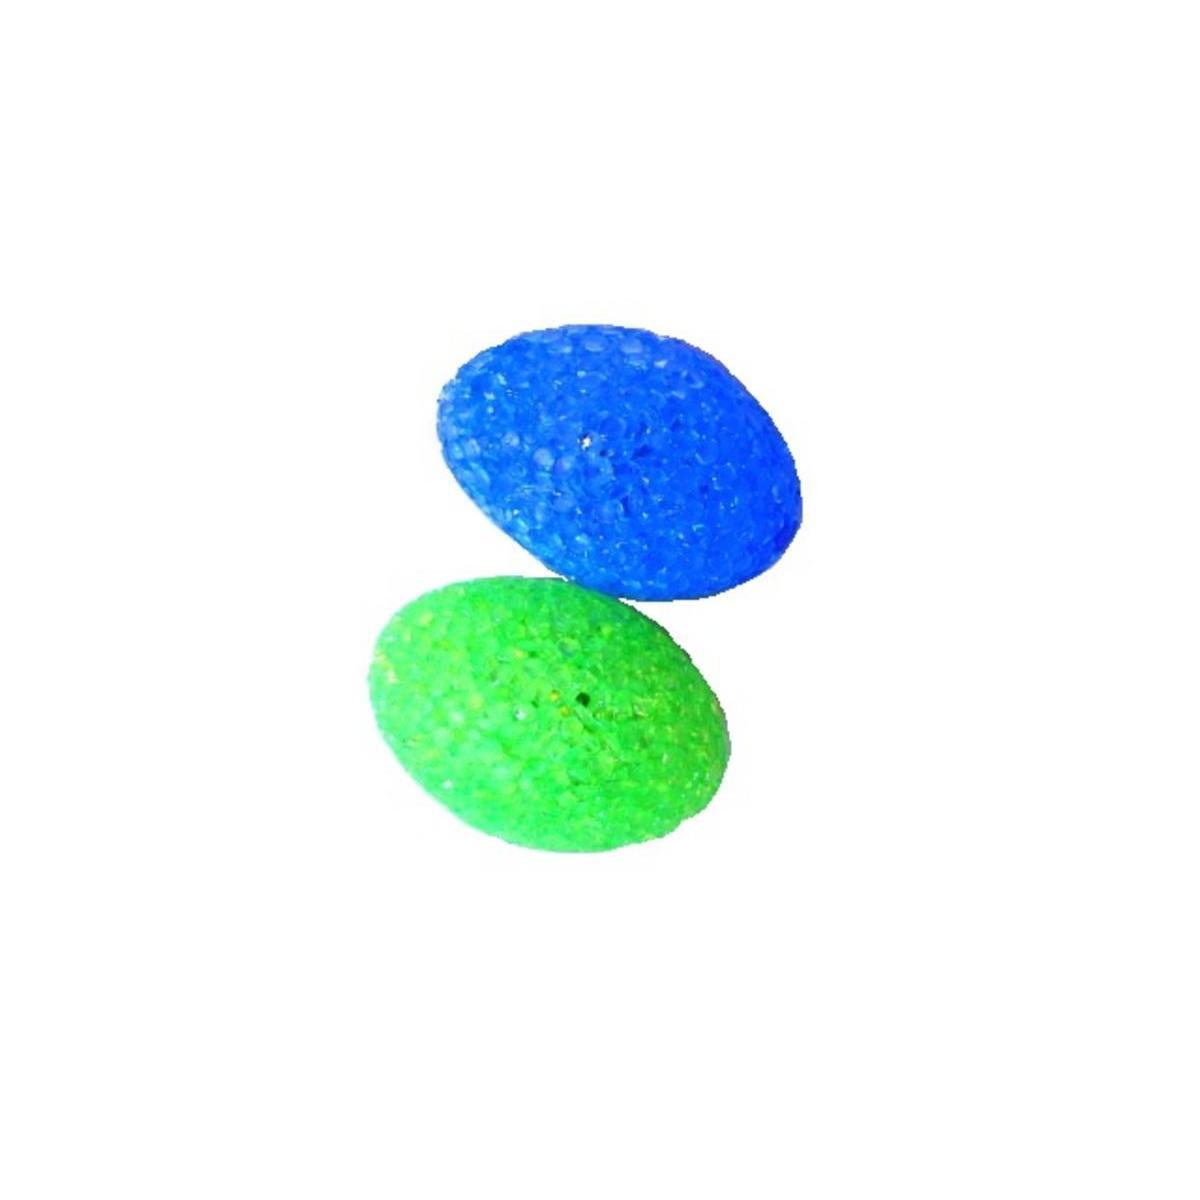 2 jouets pour chats - 6,5 x 4 cm - Plastique - Bleu et vert